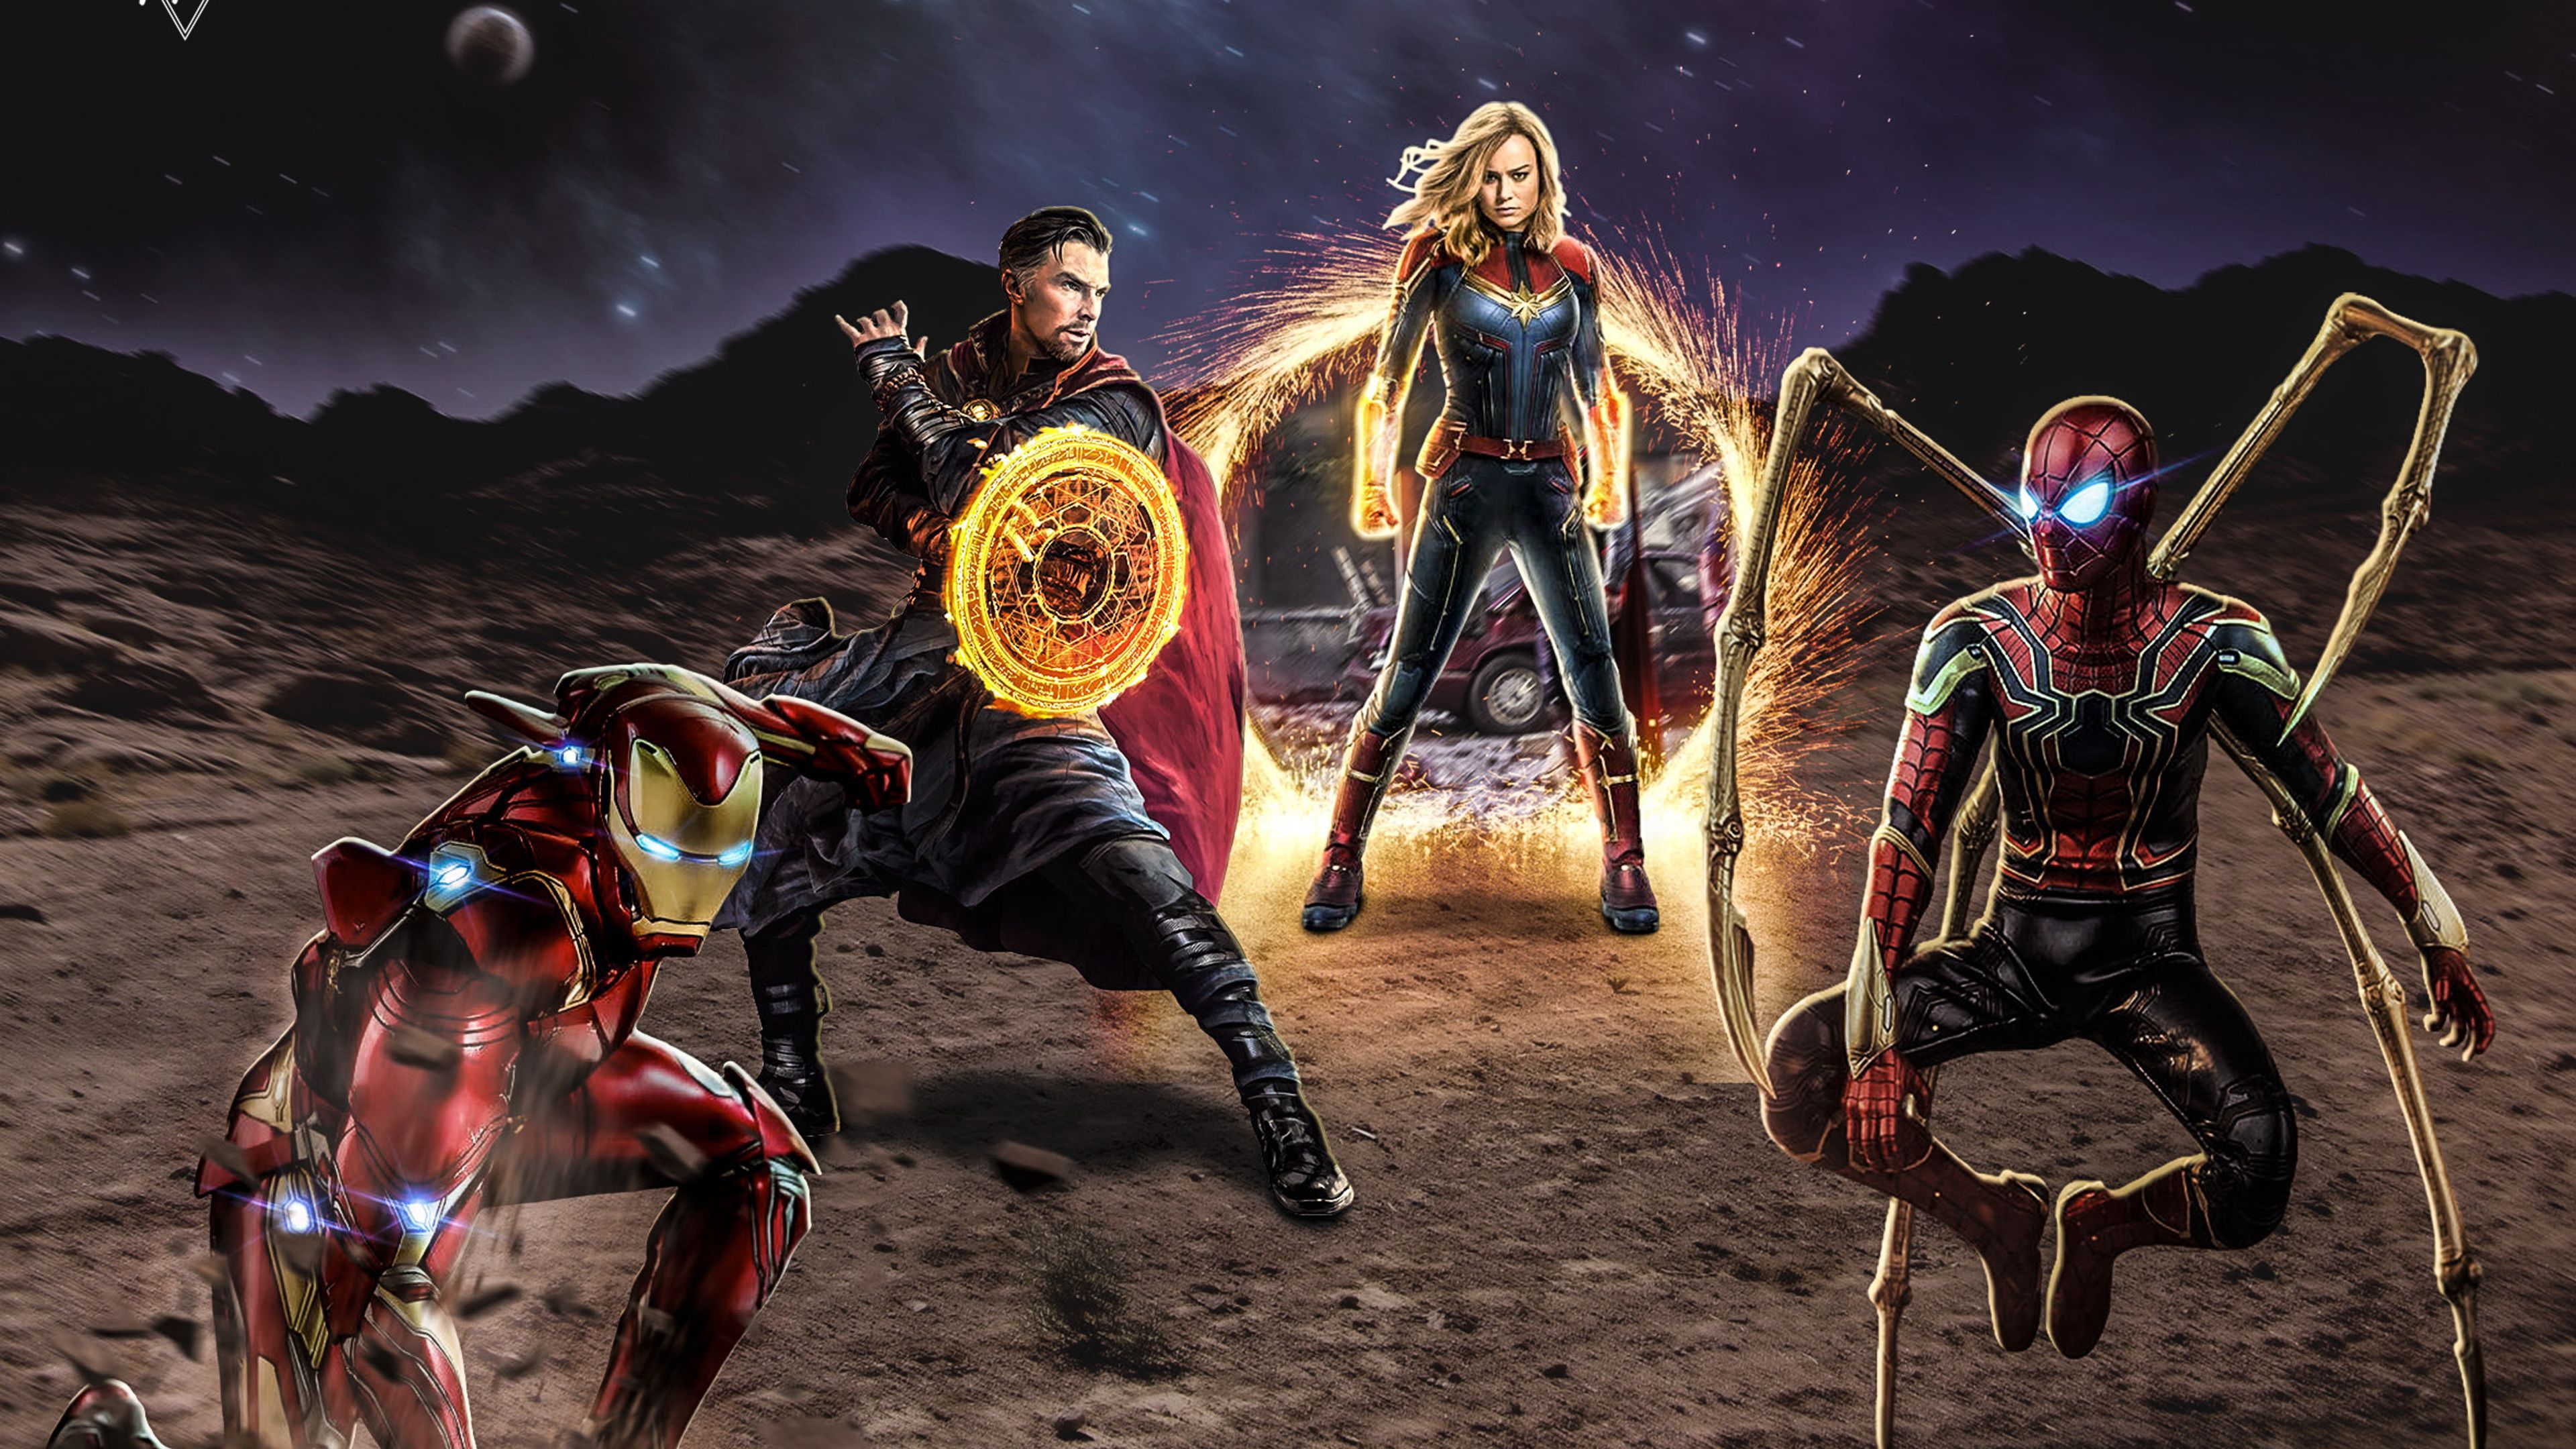 Avengers 4 End Game Art 2019 4k wallpapers avengers wallpapers hd 4k, avengers end game 4k wallpaper…